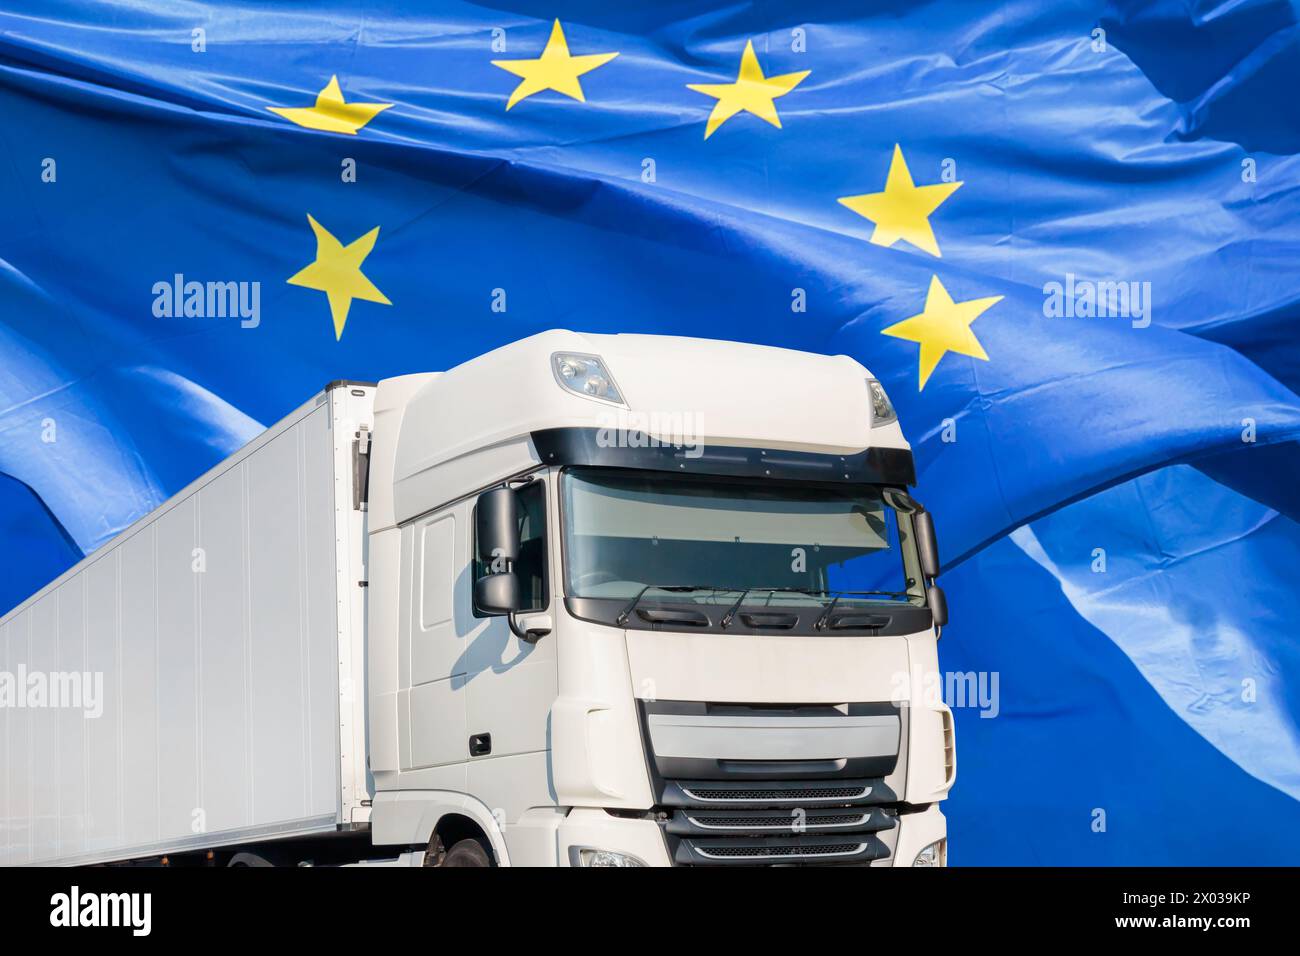 Camion de transport blanc devant un drapeau européen agitant Banque D'Images